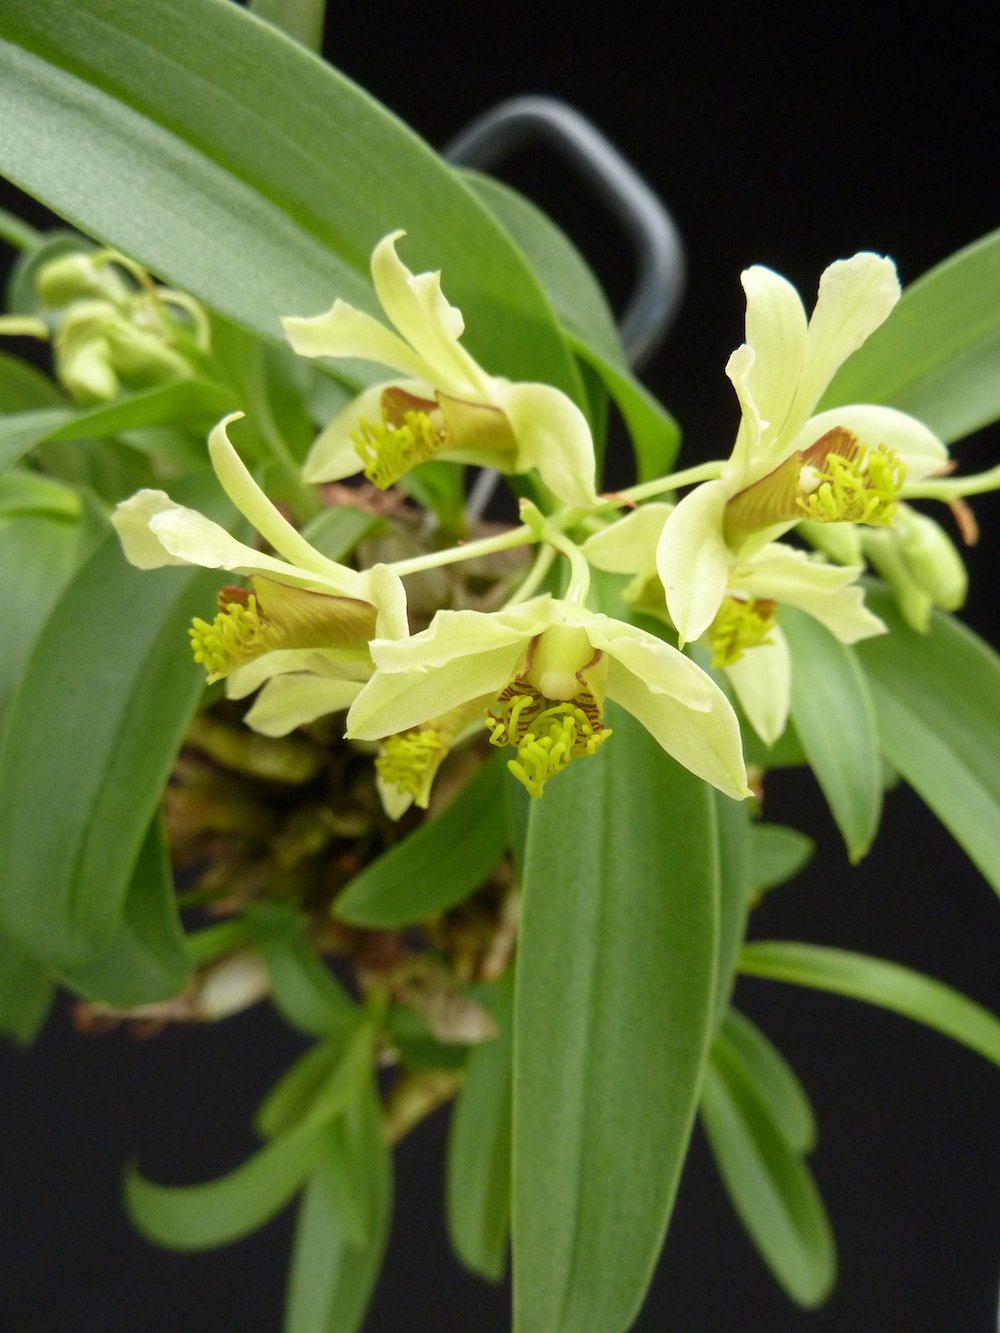 Dendrobium delacourii "Big"